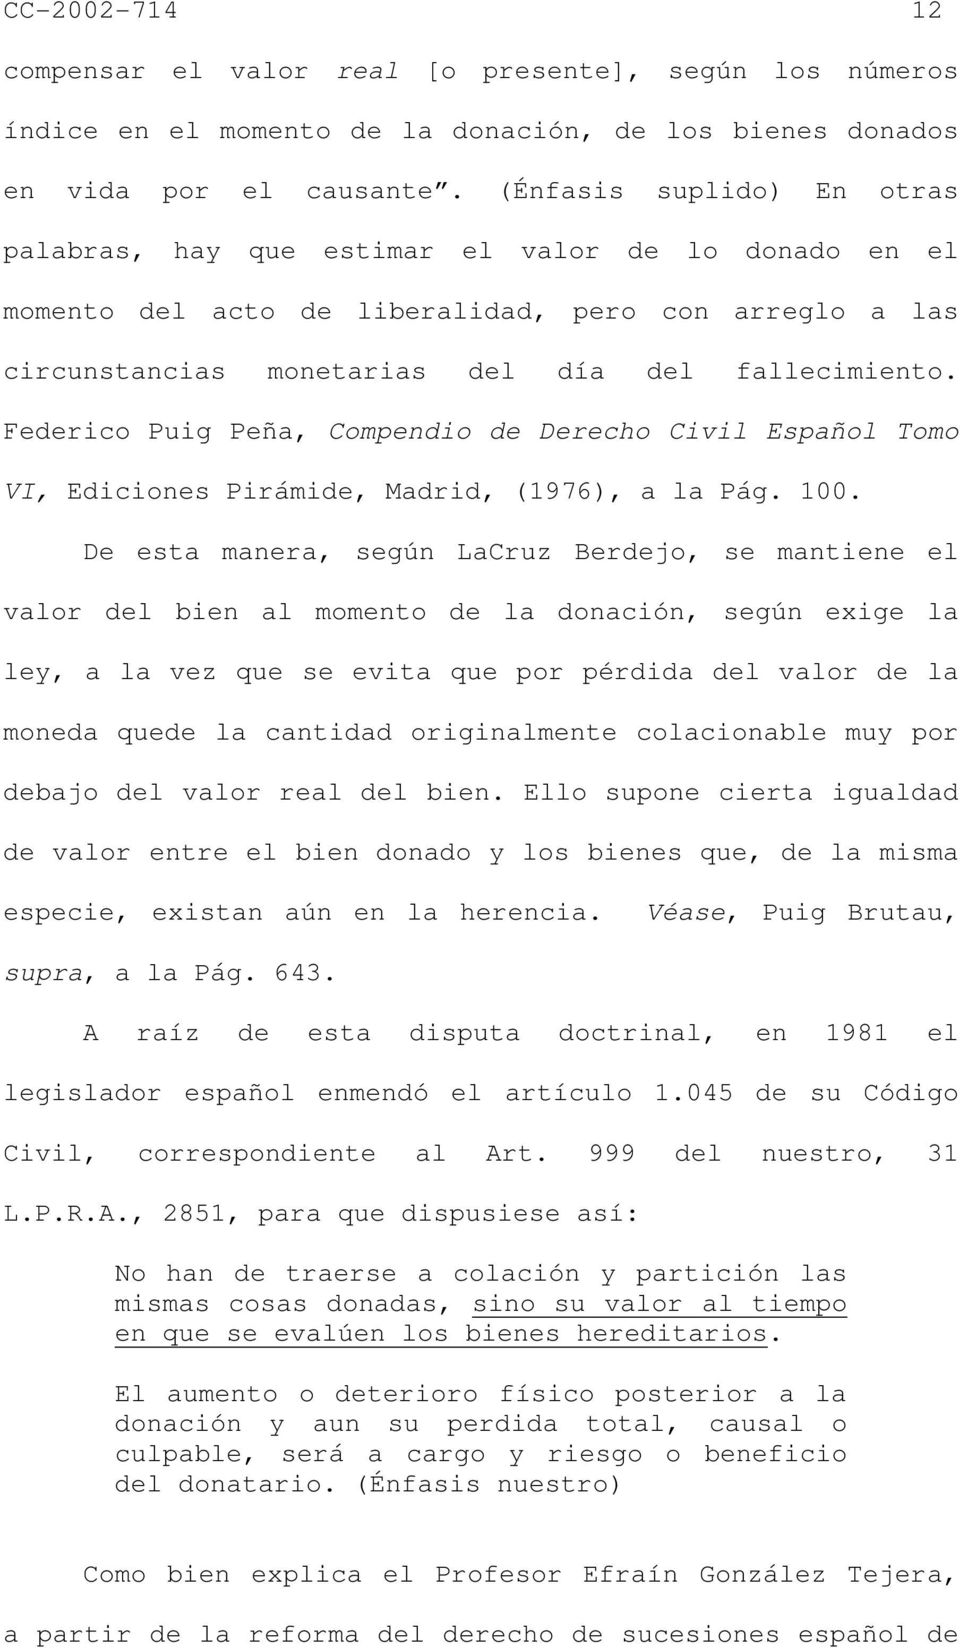 Federico Puig Peña, Compendio de Derecho Civil Español Tomo VI, Ediciones Pirámide, Madrid, (1976), a la Pág. 100.